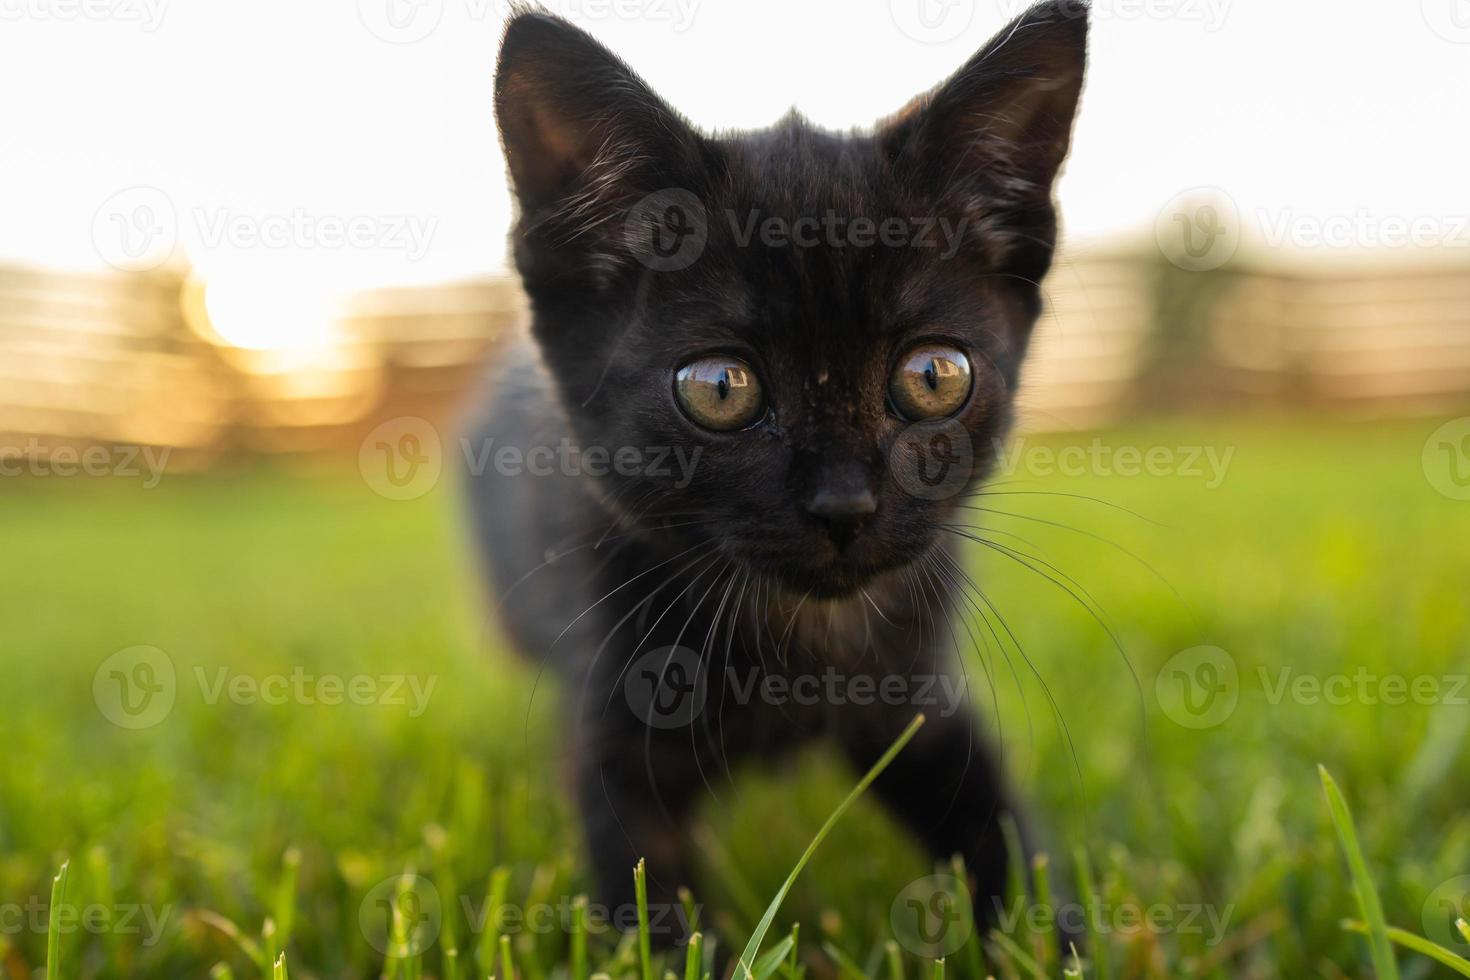 Schwarzes, neugieriges Kätzchen im Freien im Gras - Haustier- und Hauskatzenkonzept. kopierraum und platz für werbung foto